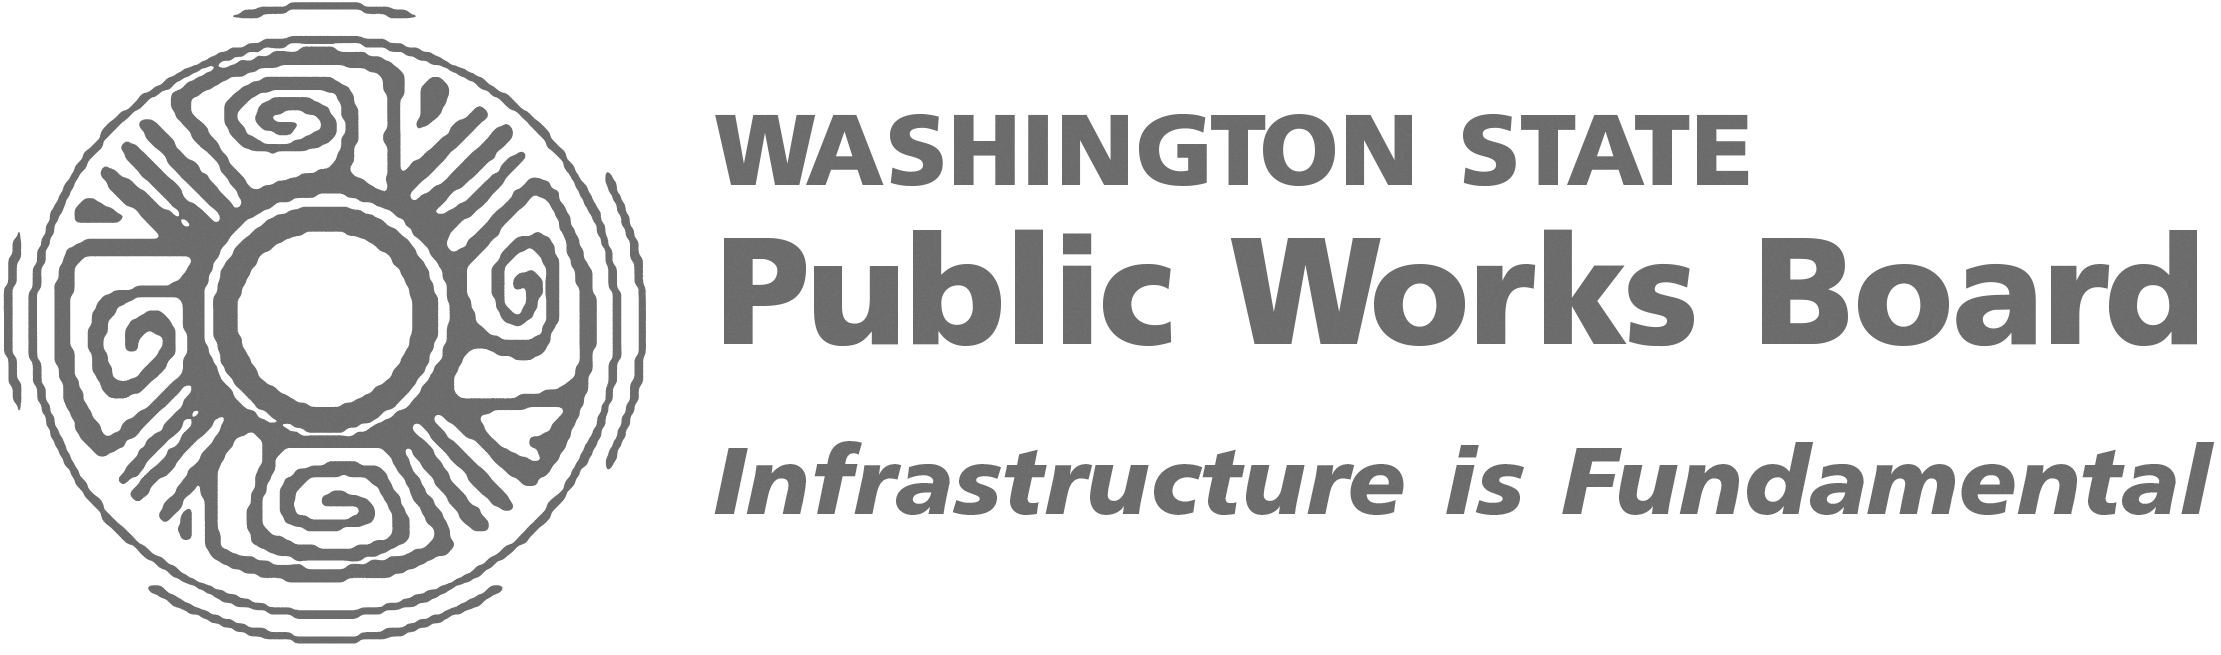 Washington Public Works Board invites public input on changes to broadband funding program